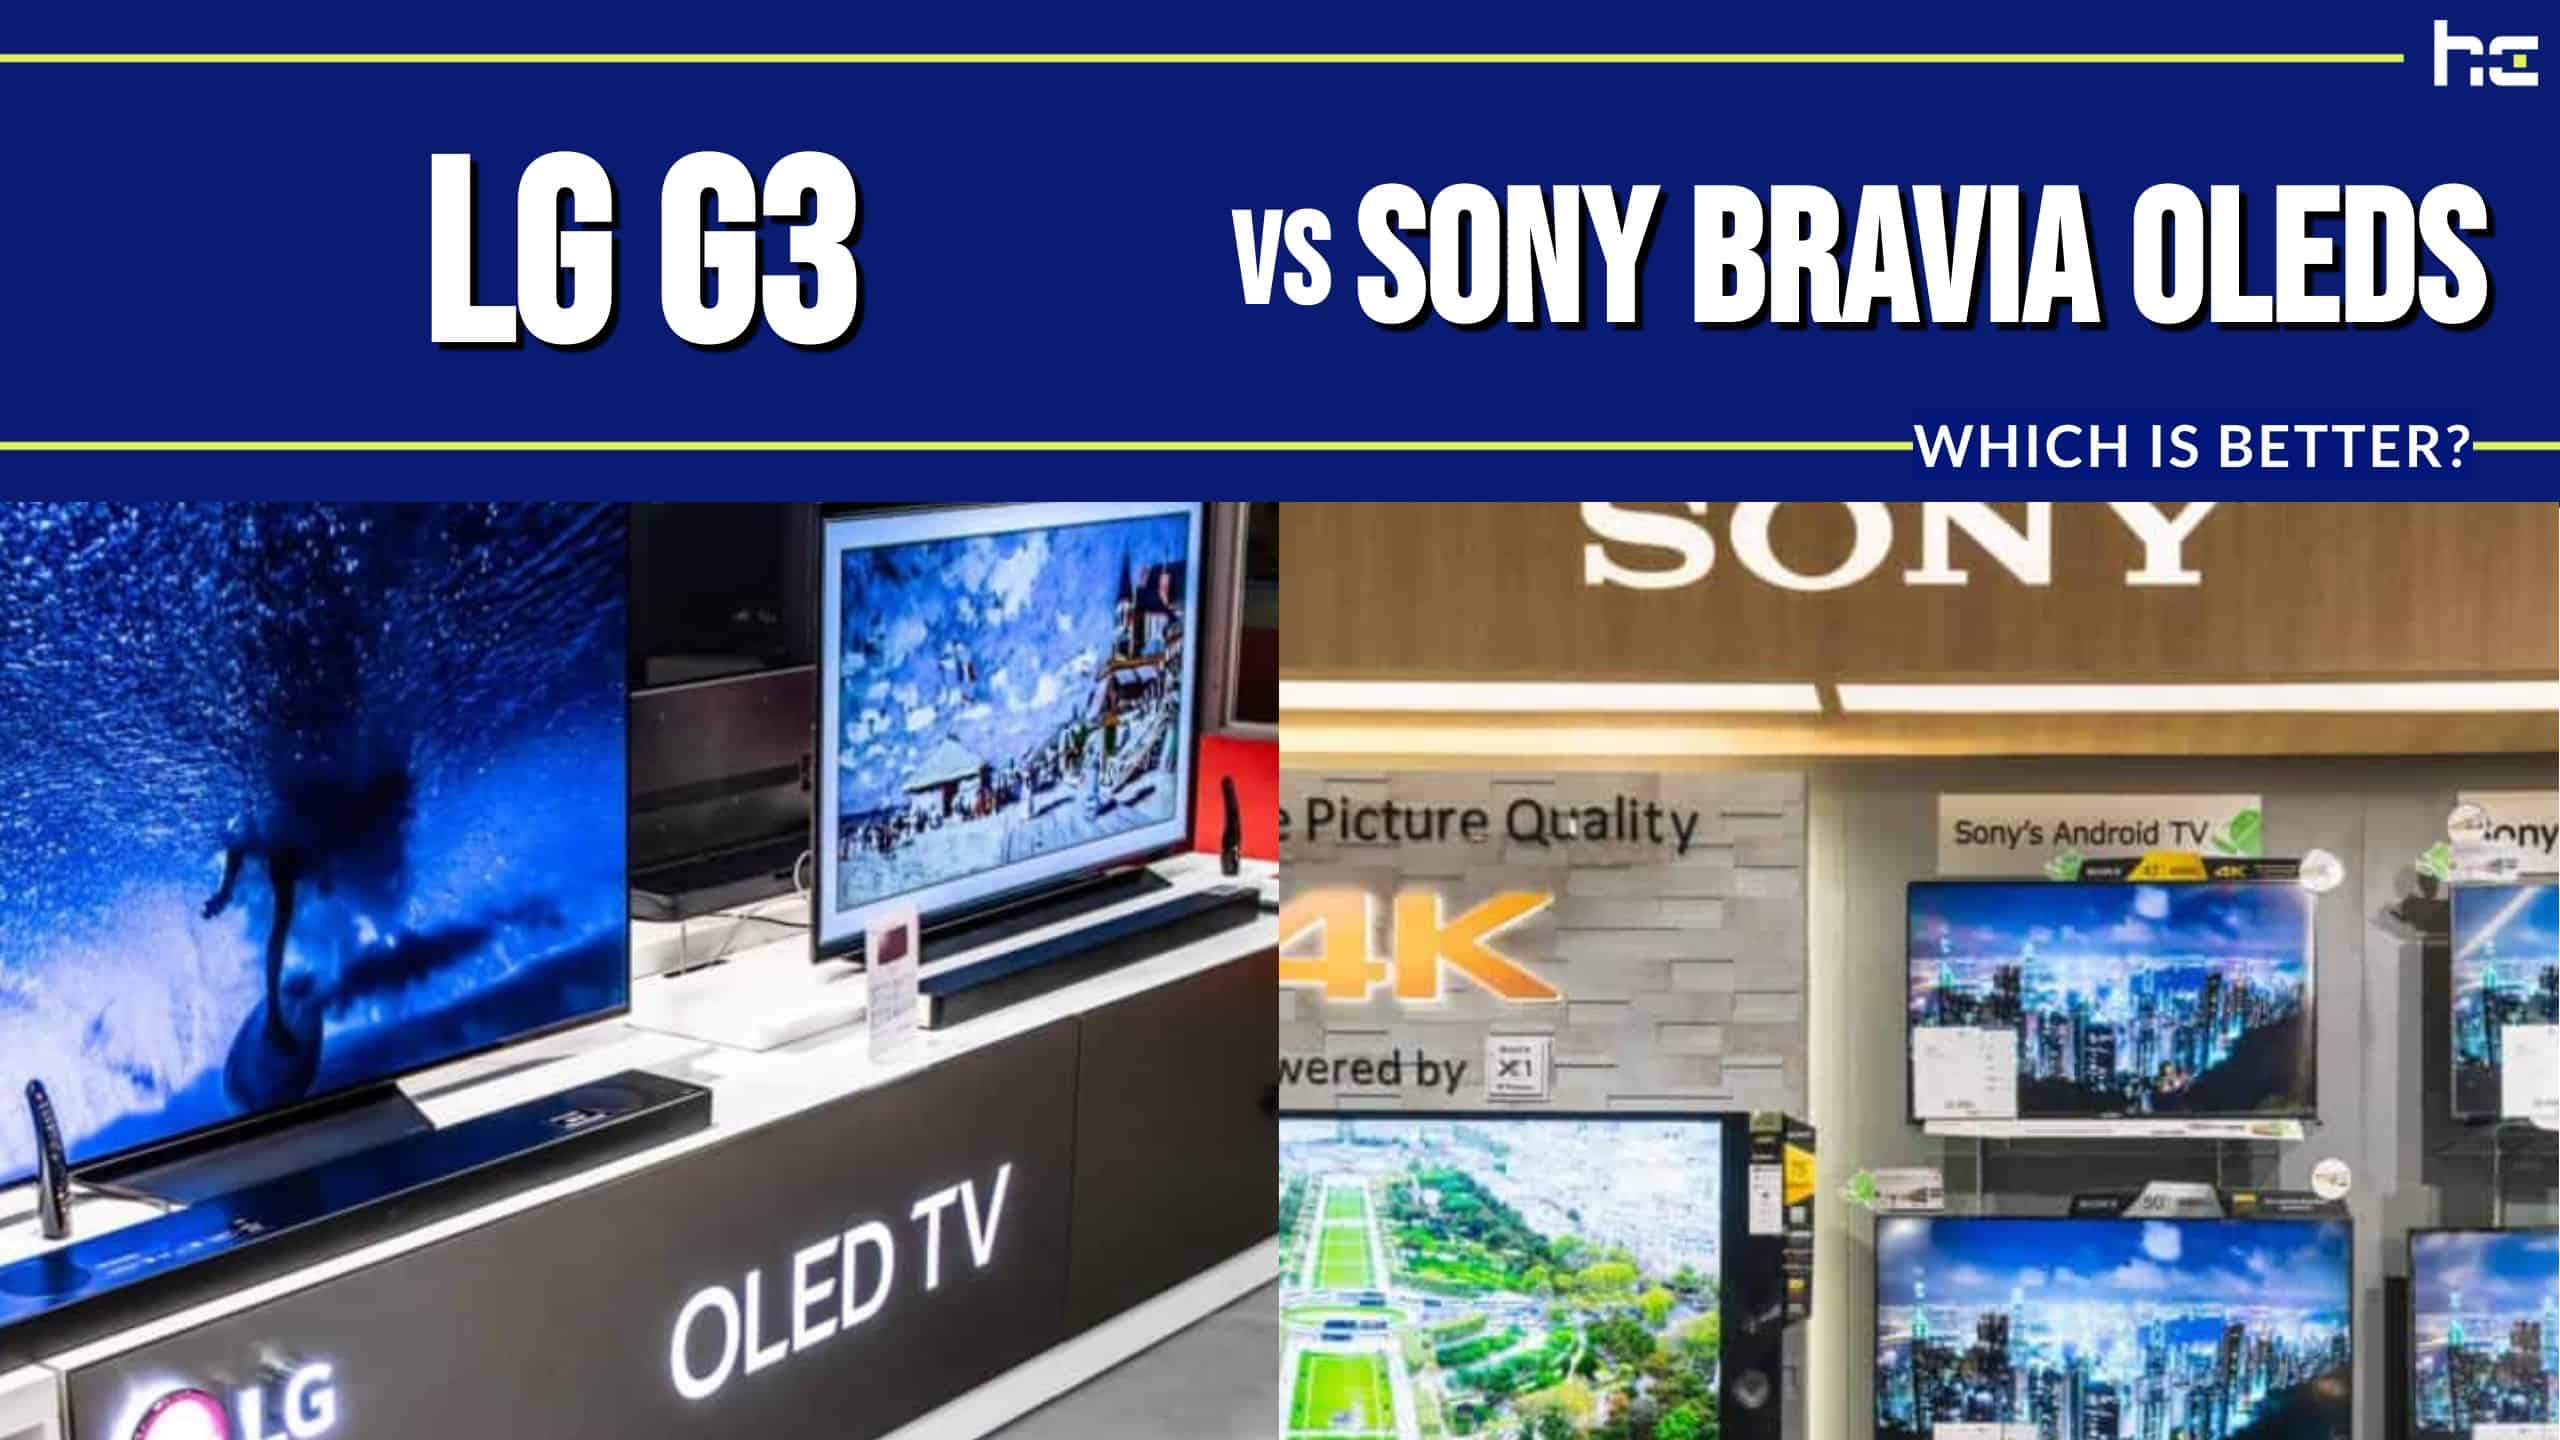 LG G3 vs Sony Bravia OLEDs